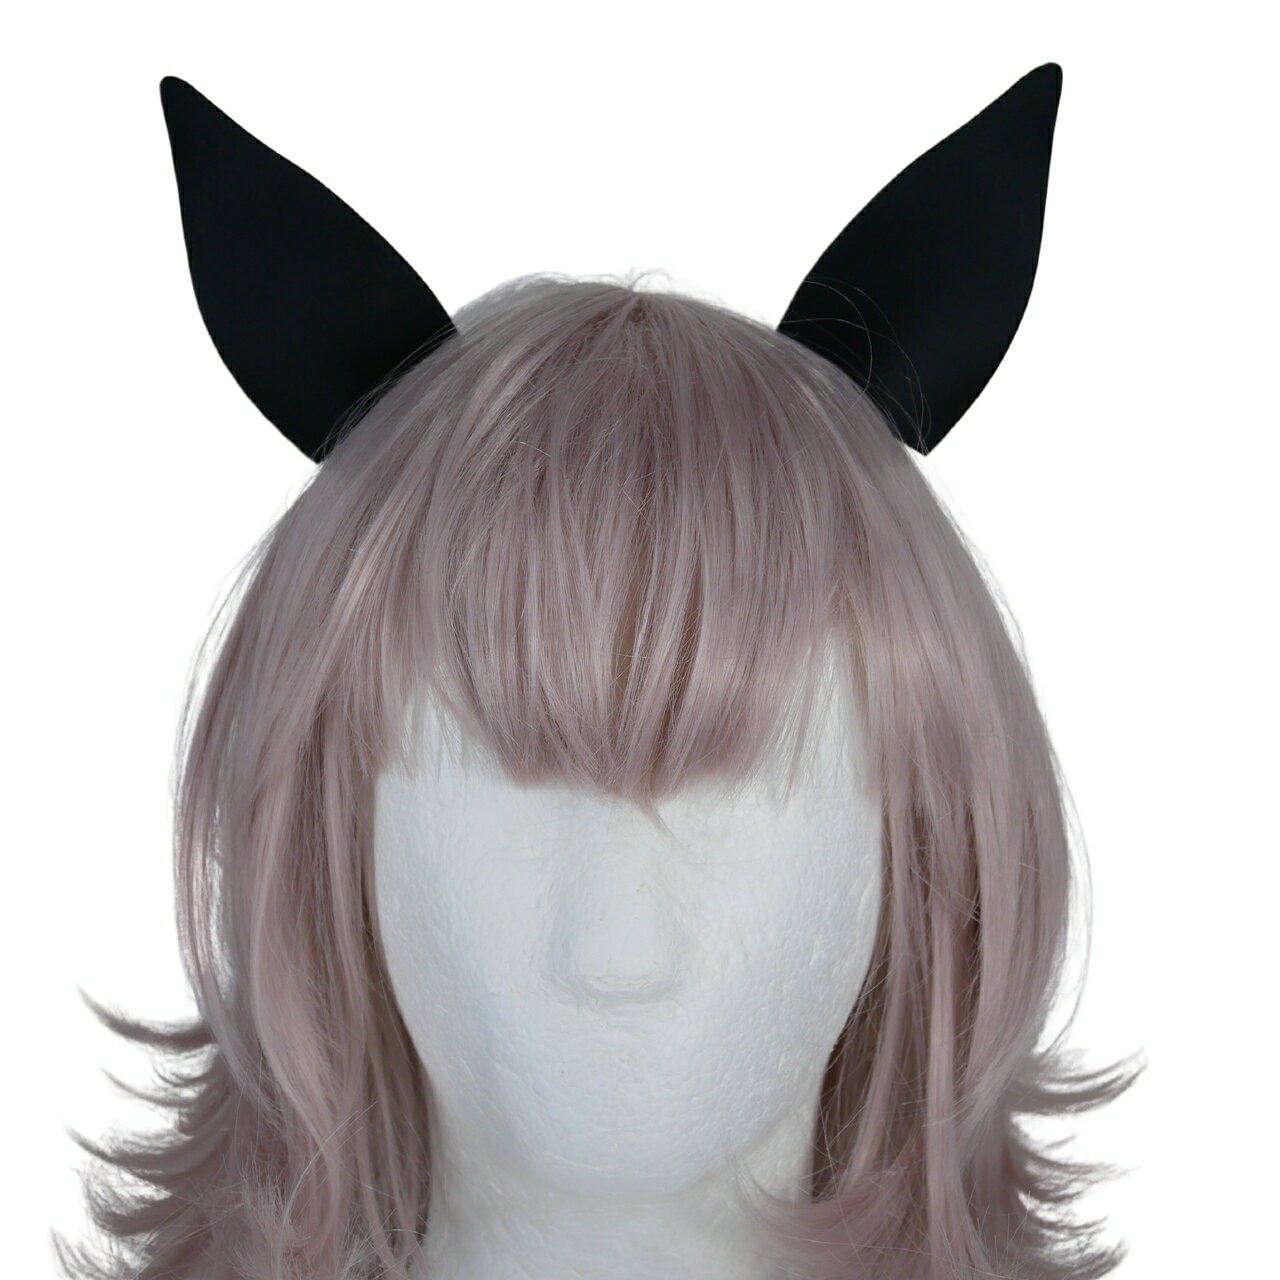 ウマ娘 カレンチャン 風 ウマ 耳カバー クリップタイプ 髪飾り ハロウィン コスプレ 3Dプリント造形 仮装アイテム